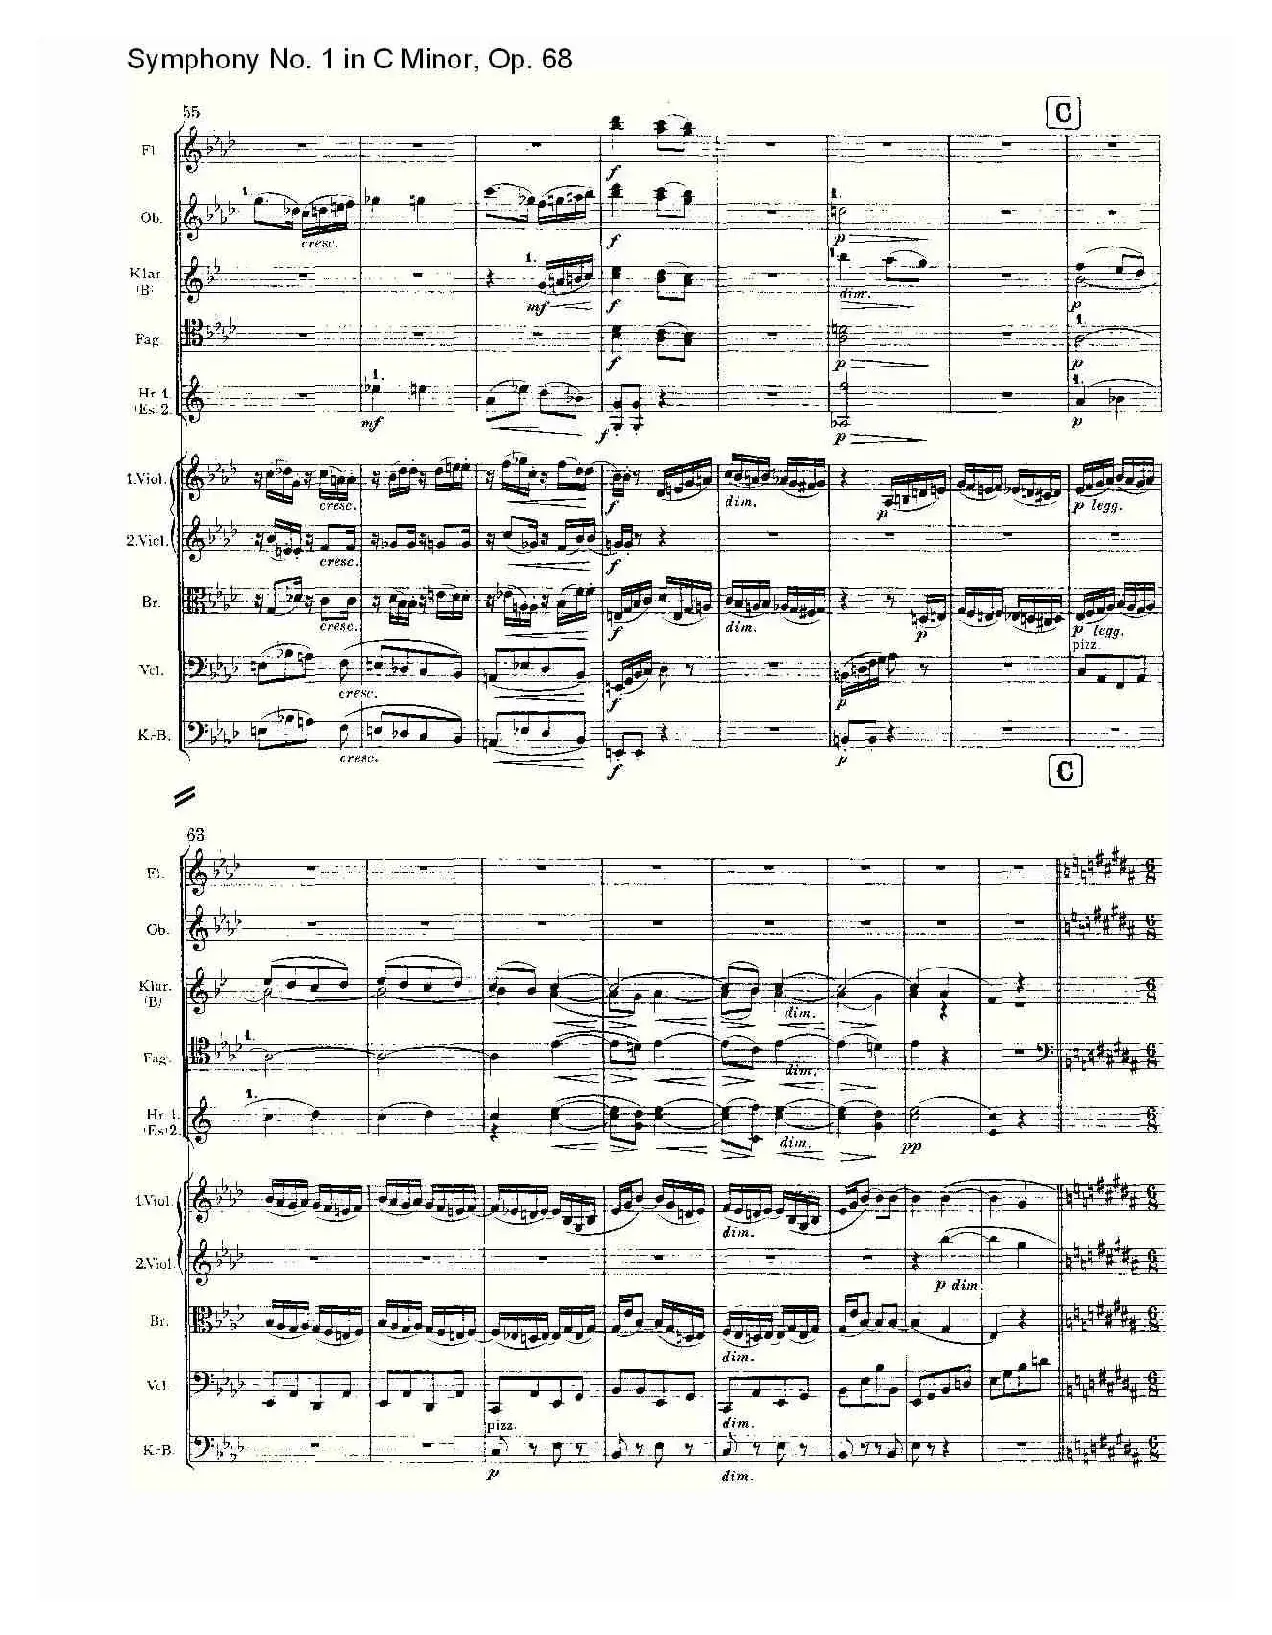 C小调第一交响曲, Op.68 第三乐章